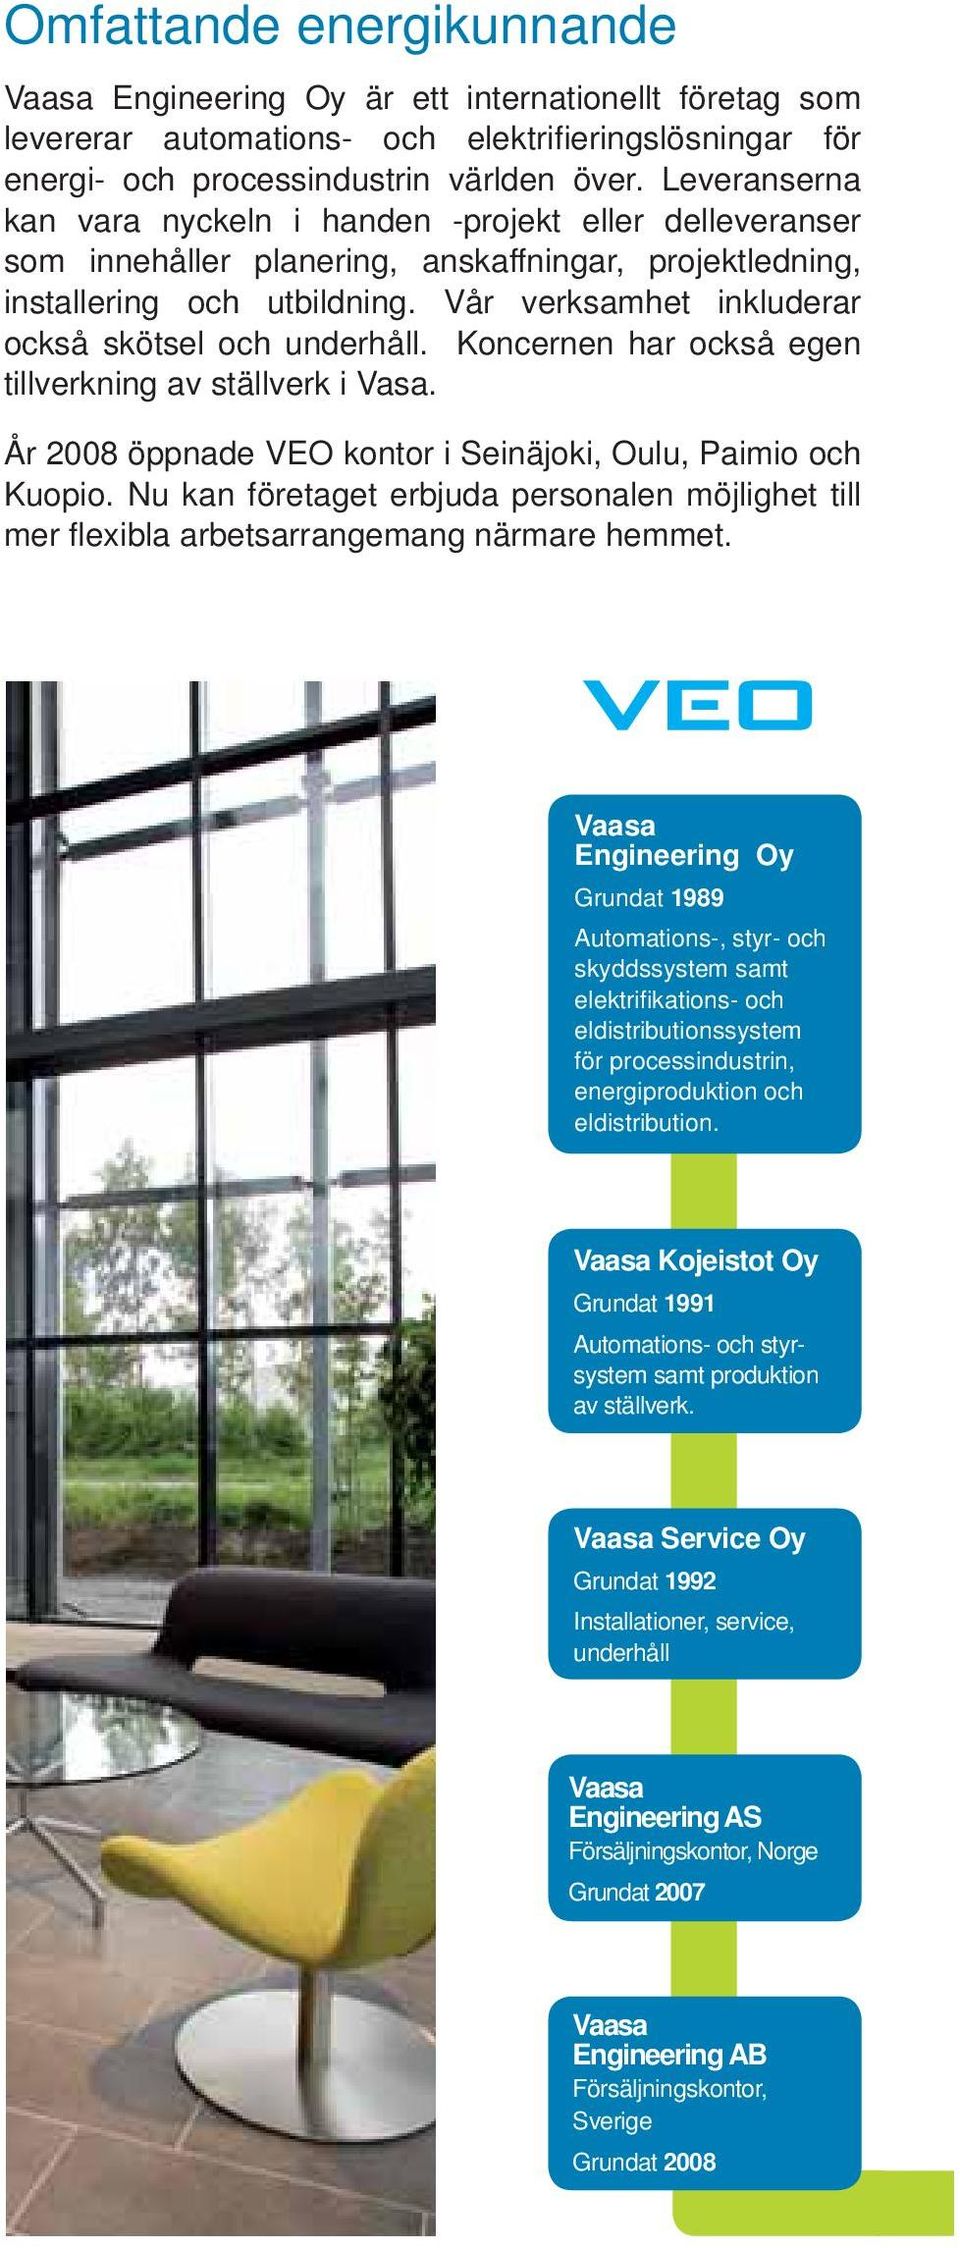 Vår verksamhet inkluderar också skötsel och underhåll. Koncernen har också egen tillverkning av ställverk i Vasa. År 2008 öppnade VEO kontor i Seinäjoki, Oulu, Paimio och Kuopio.